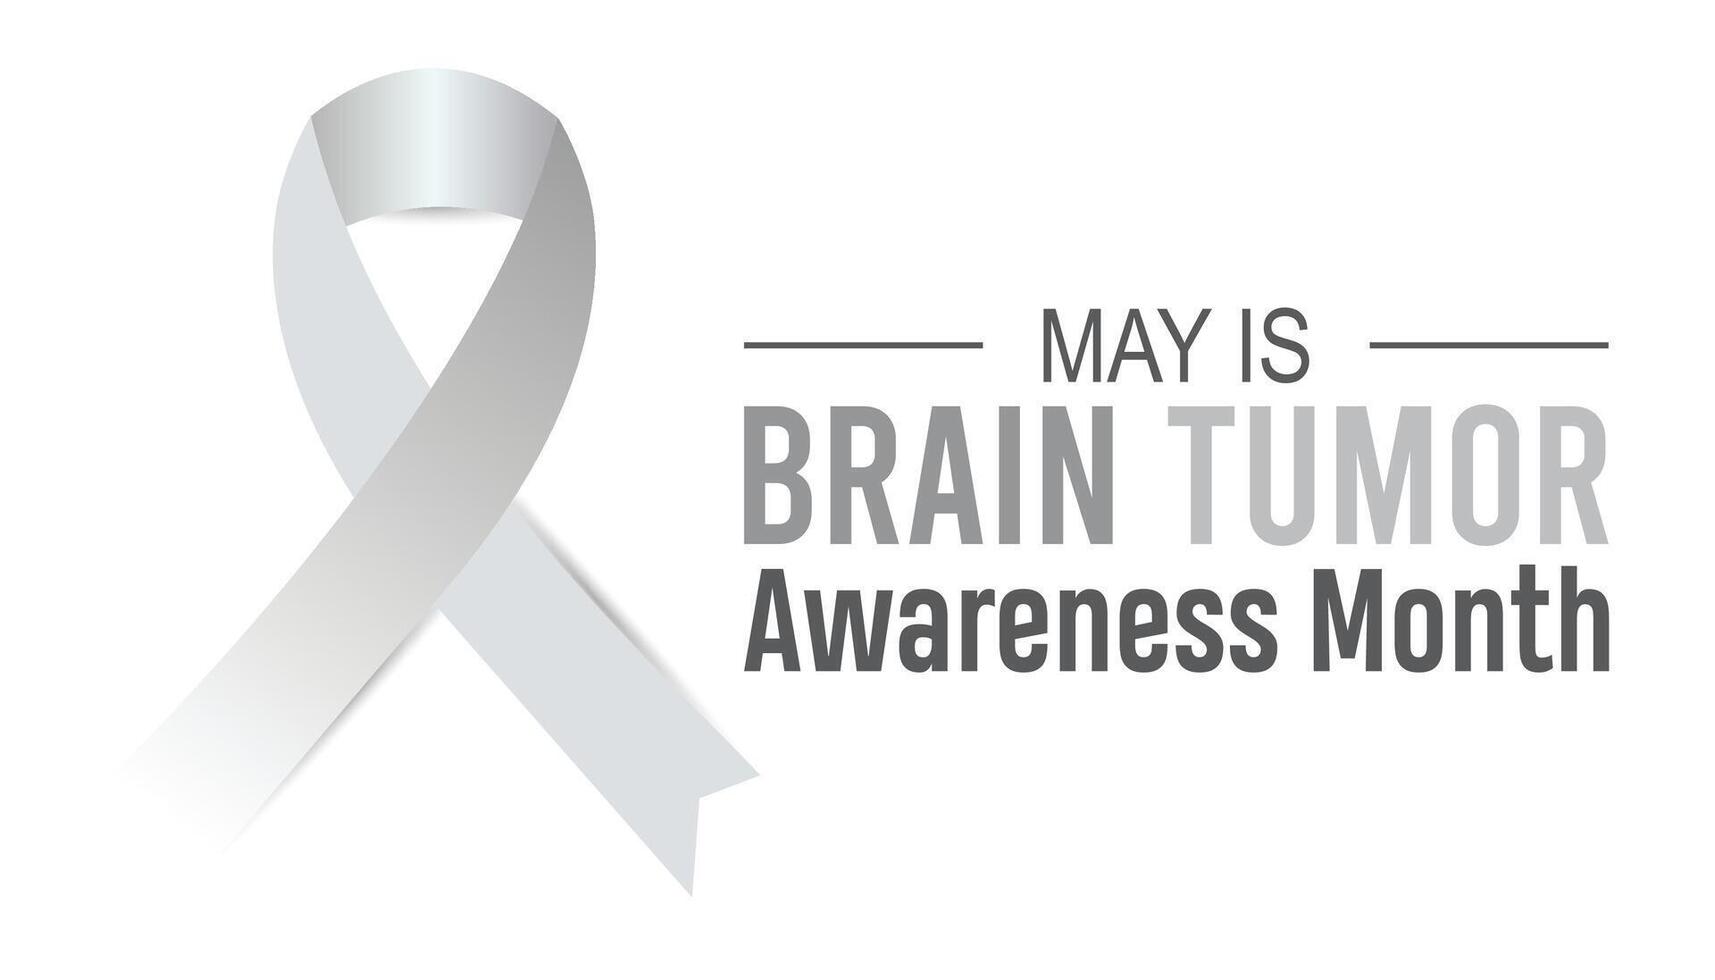 Gehirn Tumor Bewusstsein Monat beobachtete jeder Jahr im dürfen. Vorlage zum Hintergrund, Banner, Karte, Poster mit Text Inschrift. vektor